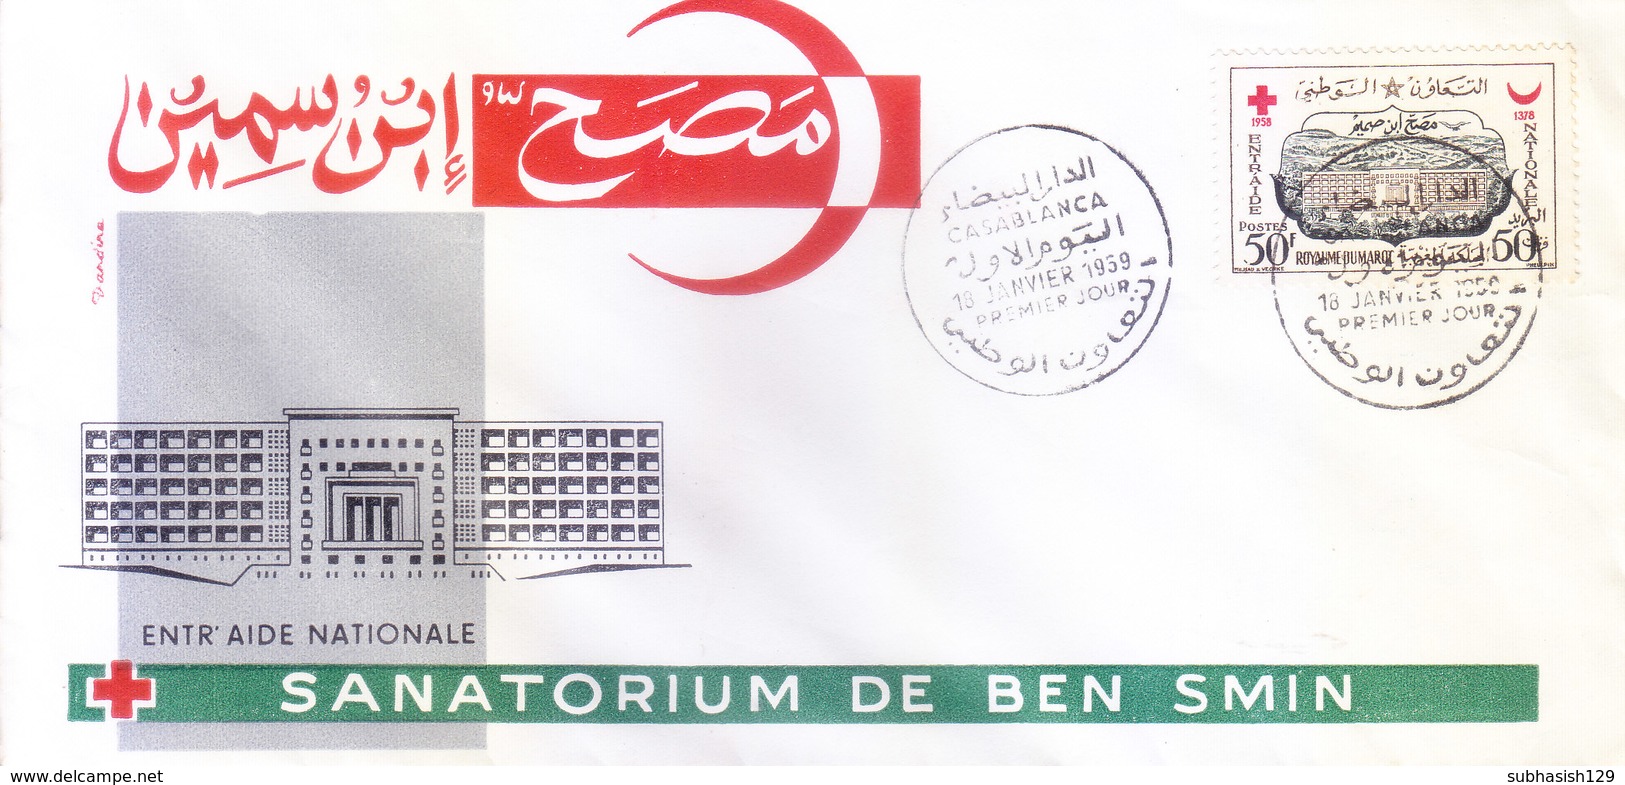 MOROCCO : FIRST DAY COVER : 01-01-1956 : RED CROSS SANATORIUM DE BEN SMIN, ENTR AIDE NATIONALE - Morocco (1956-...)